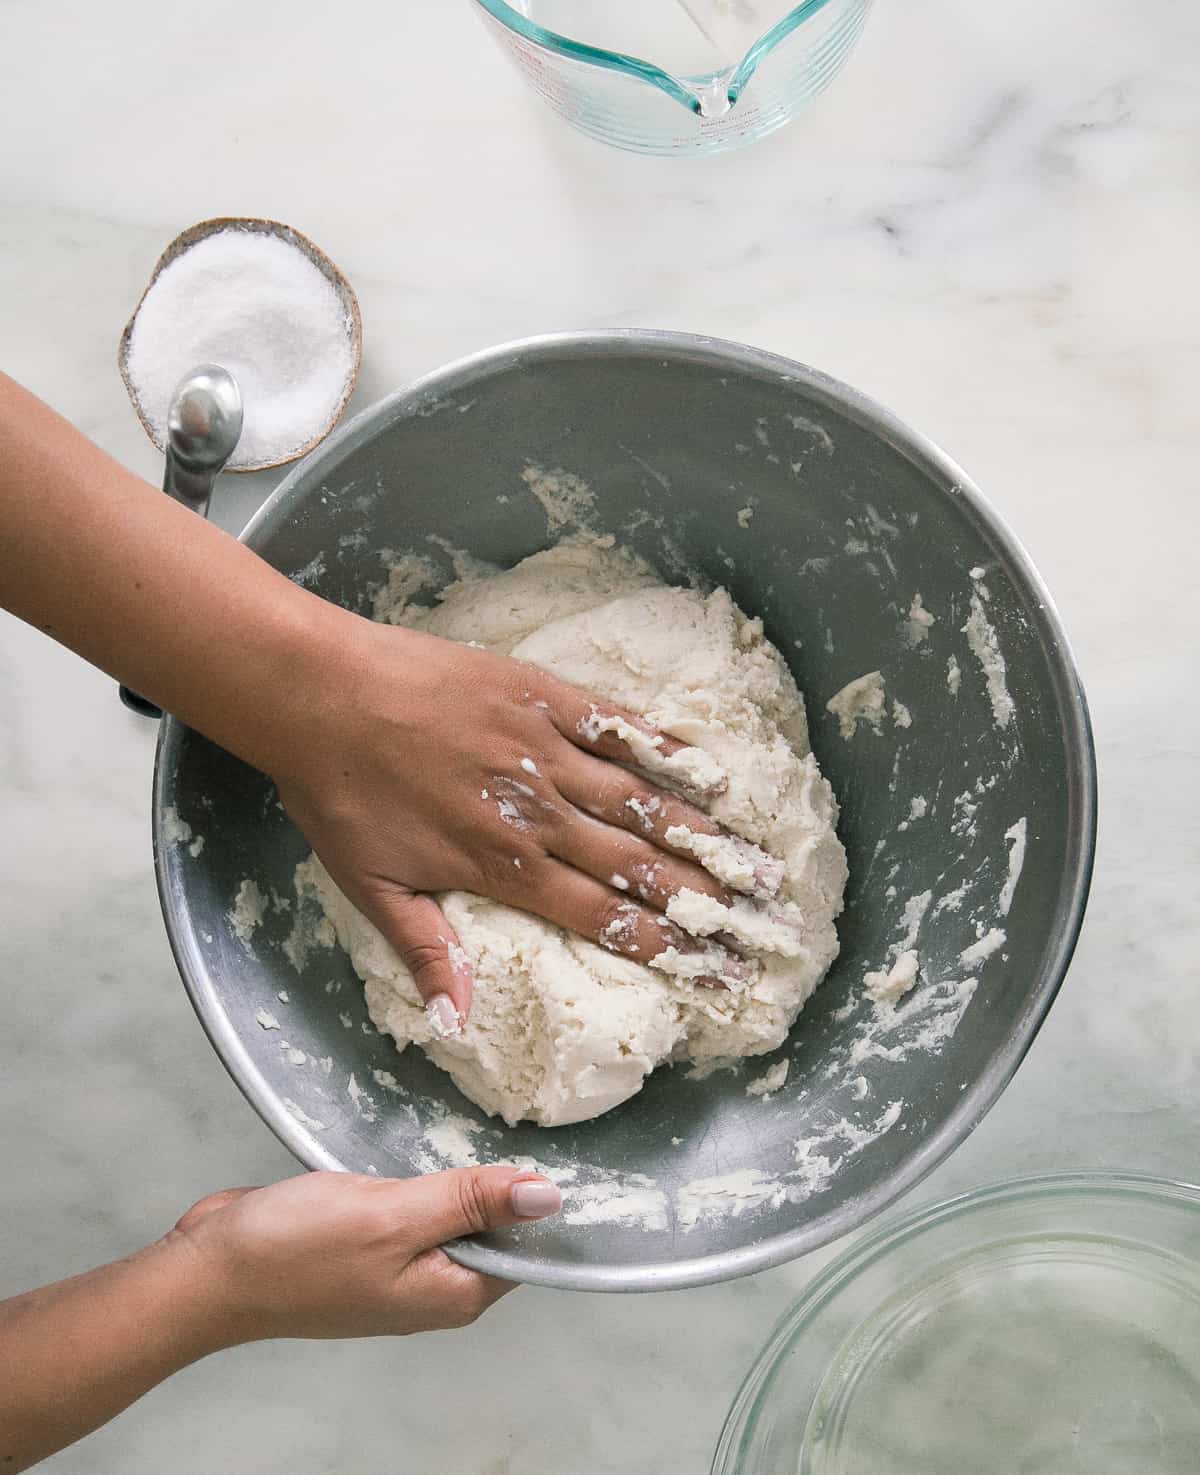 Pupusa dough being mixed